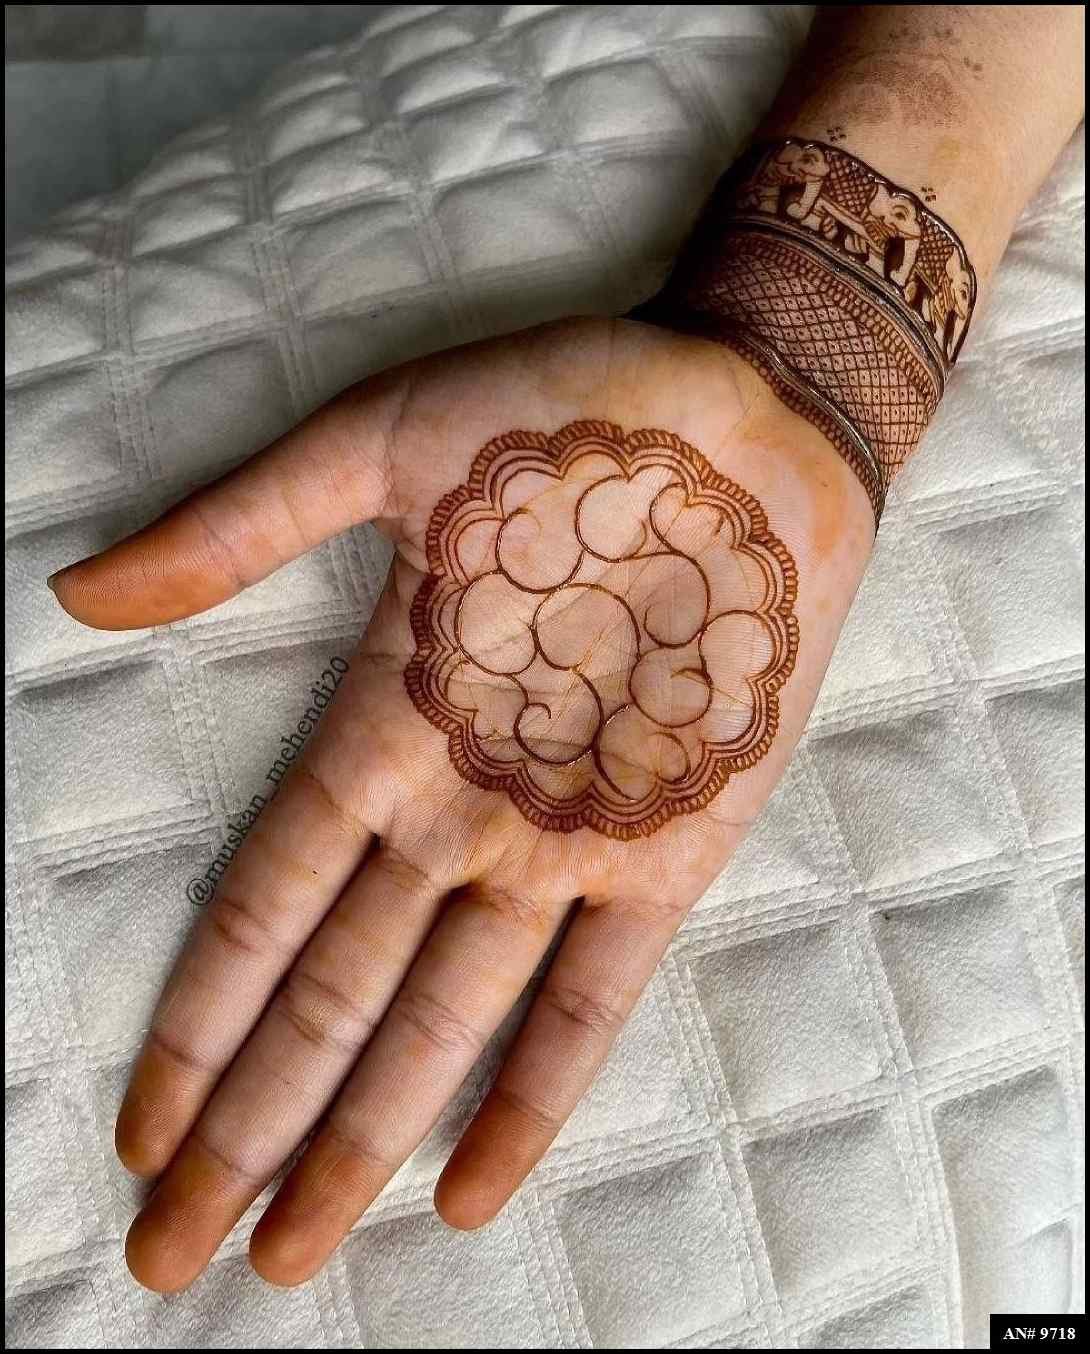 henna-mehndi-designs-front-hand